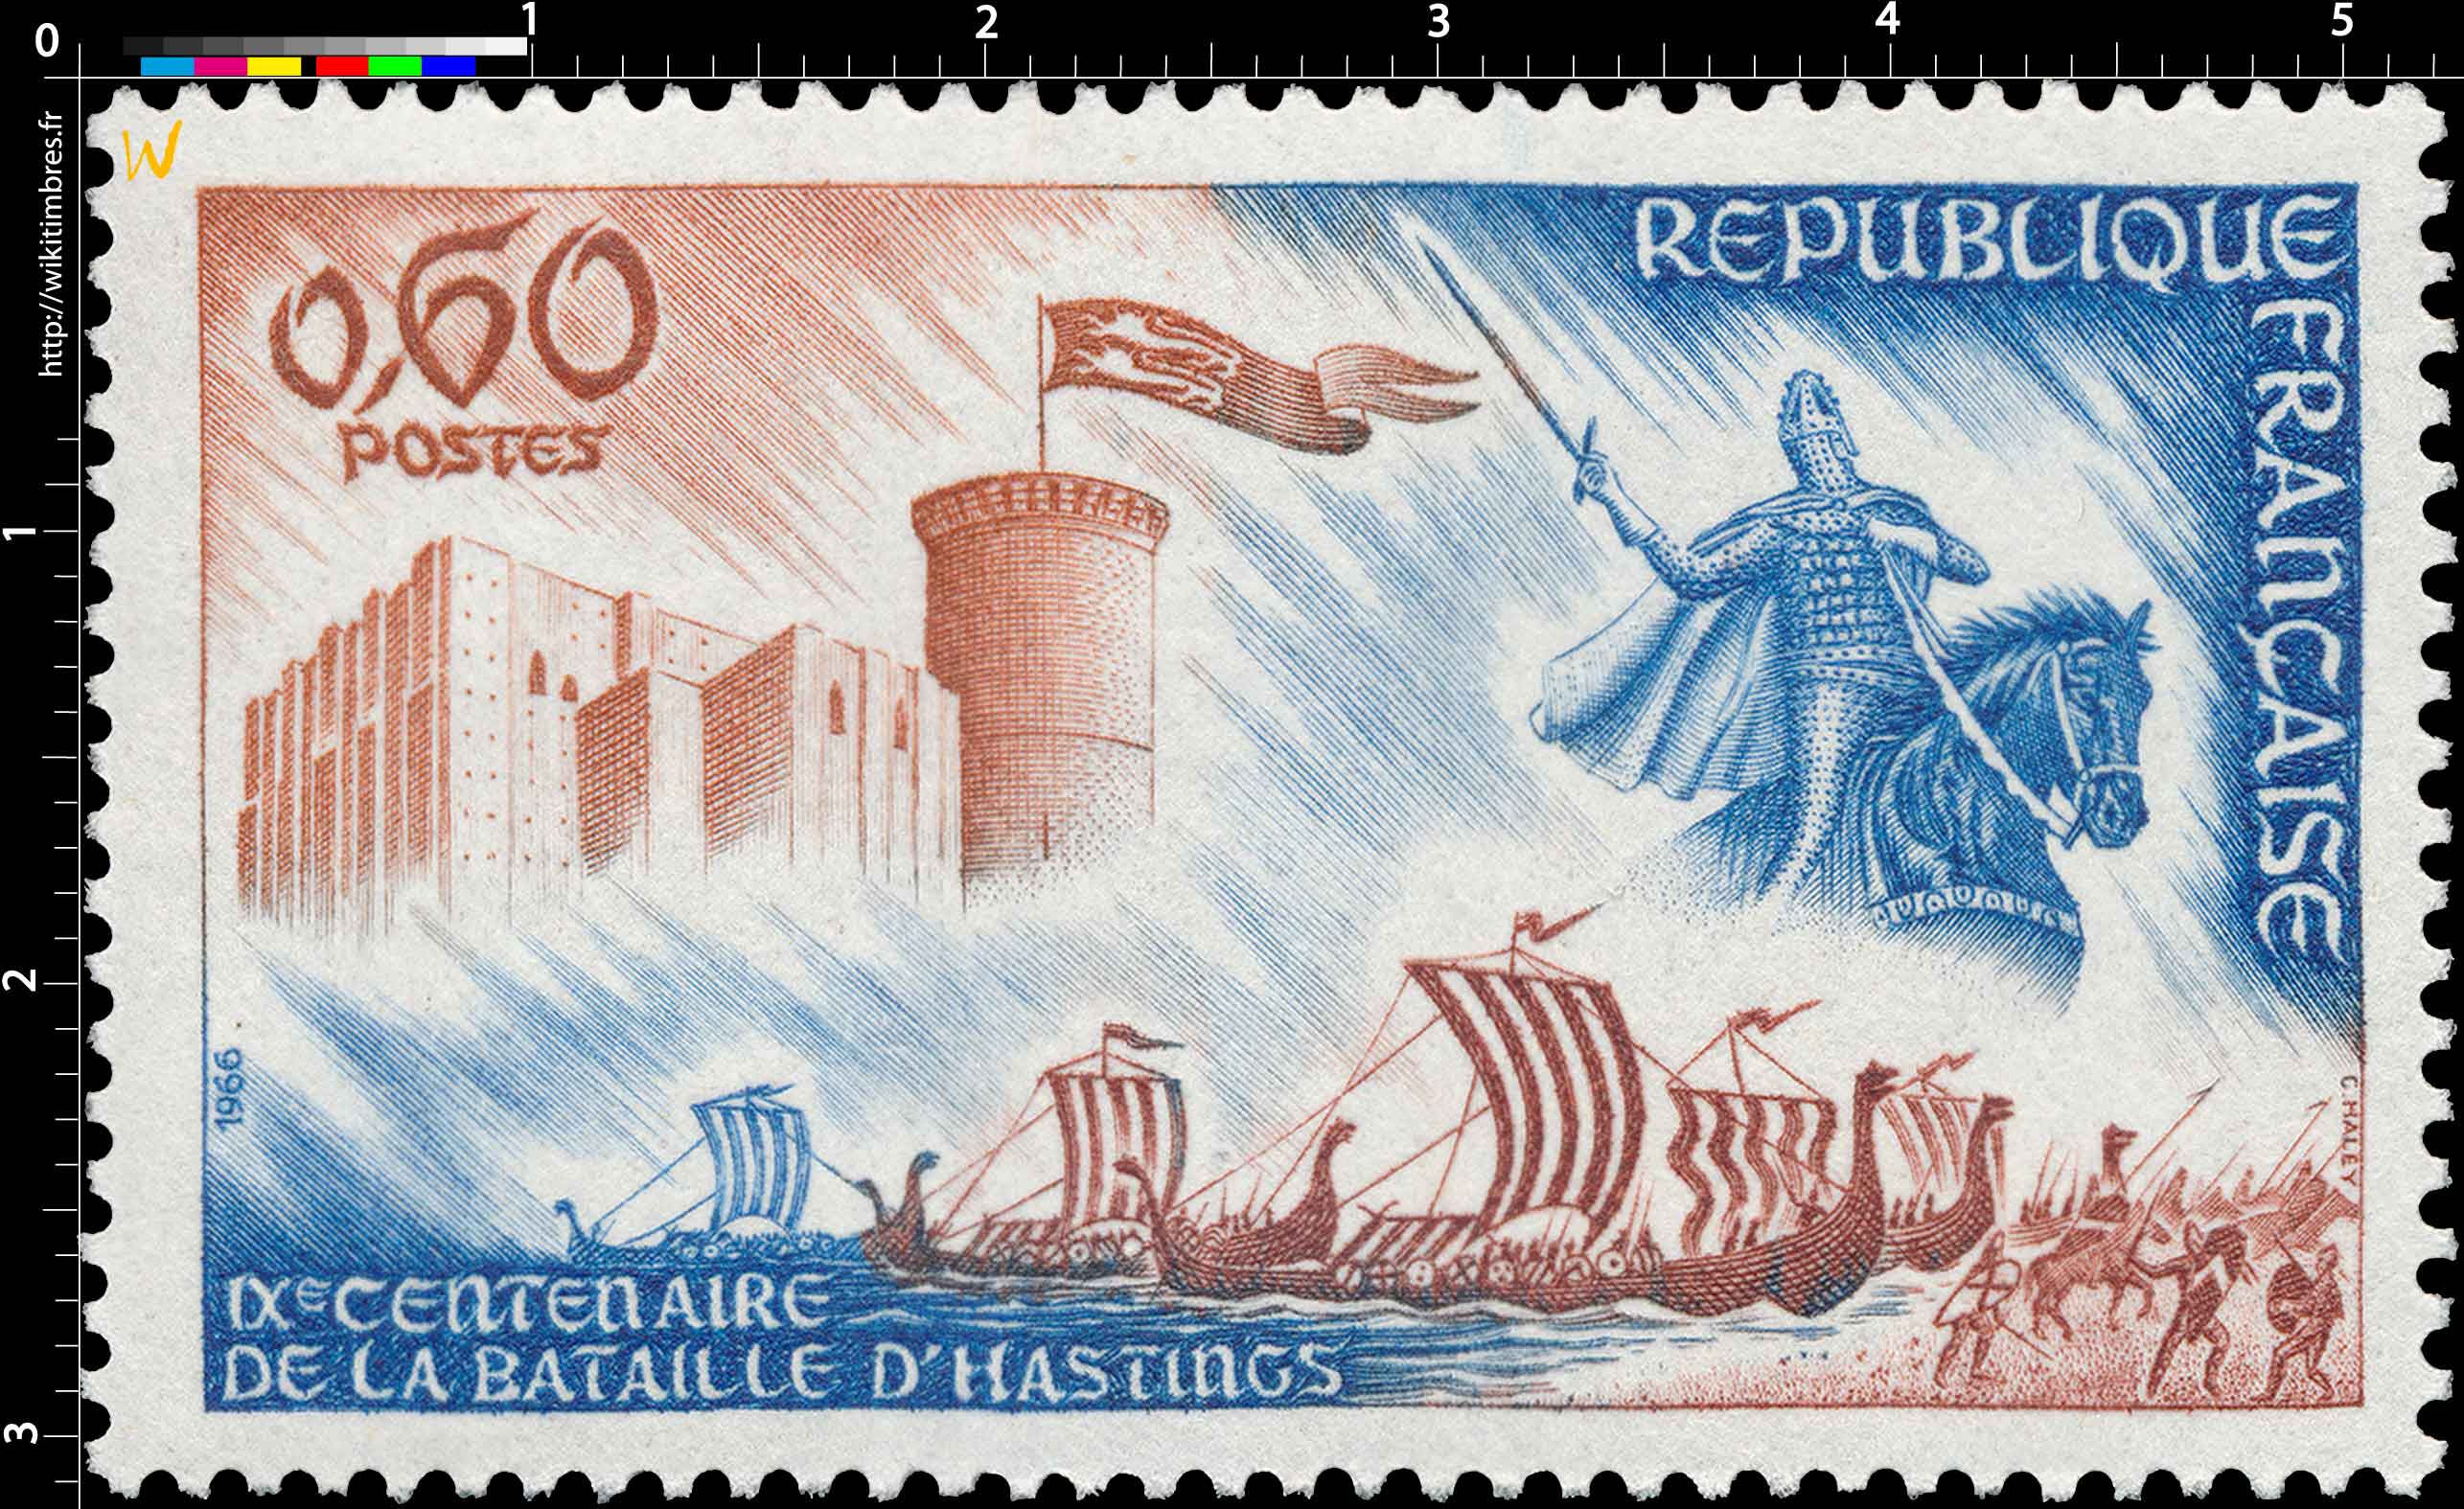 1966 IXE CENTENAIRE DE LA BATAILLE D'HASTINGS